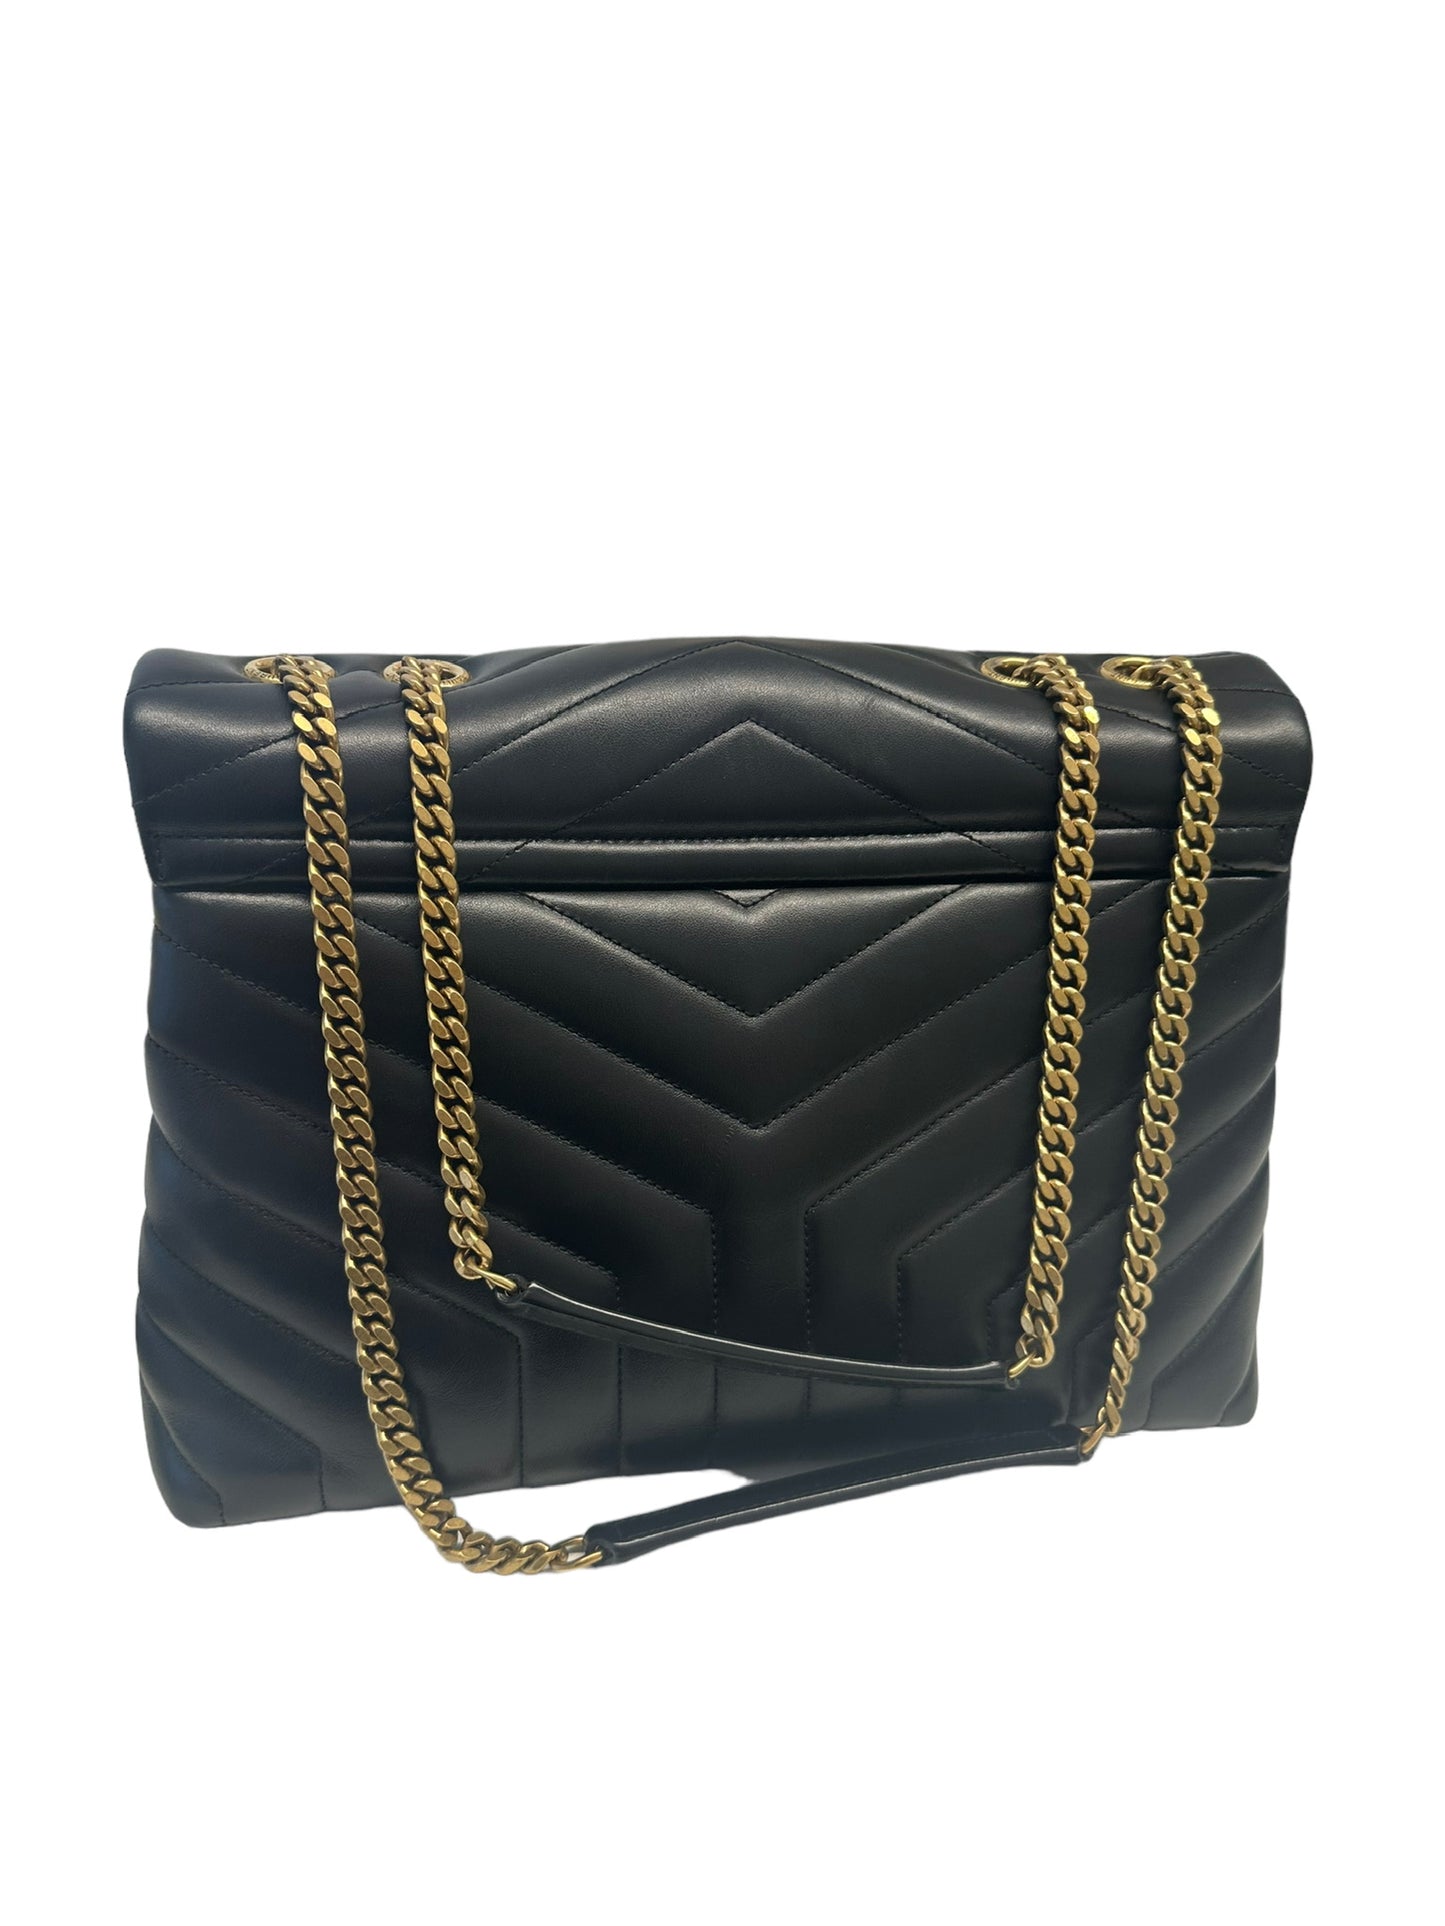 SAINT LAURENT - Black Matelassé Leather Medium Loulou Bag